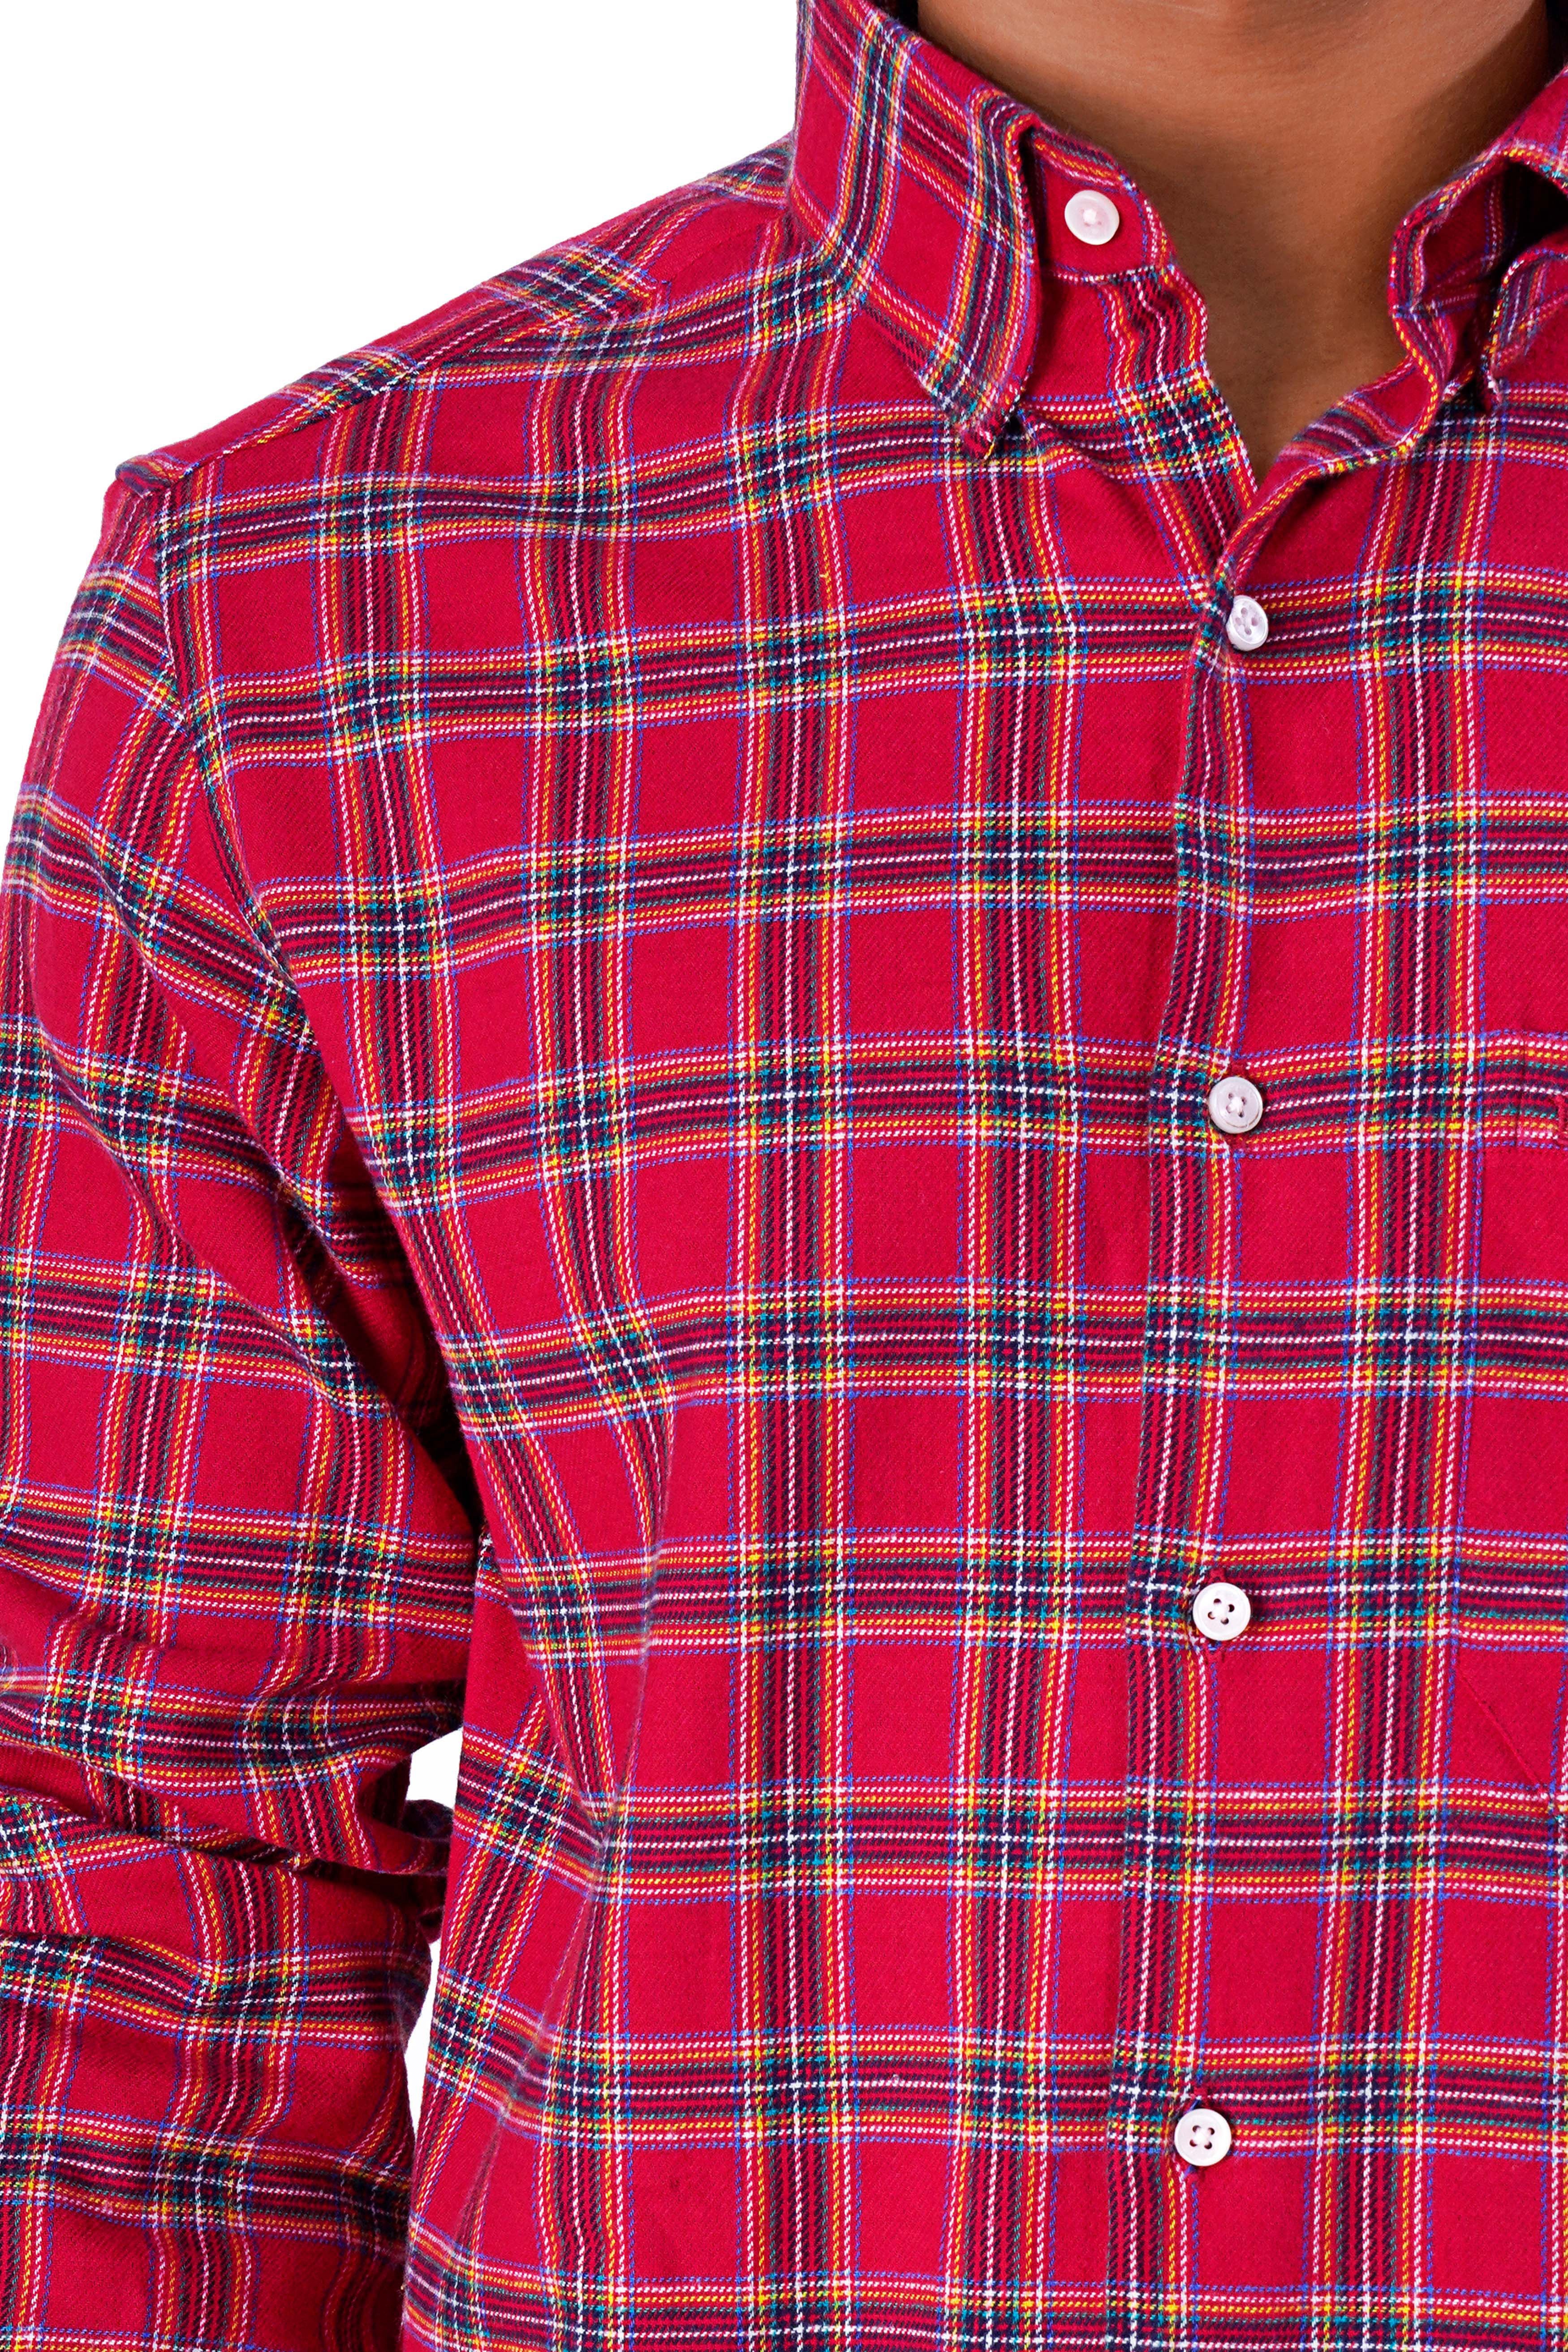 Shiraz Red Plaid Flannel Shirt